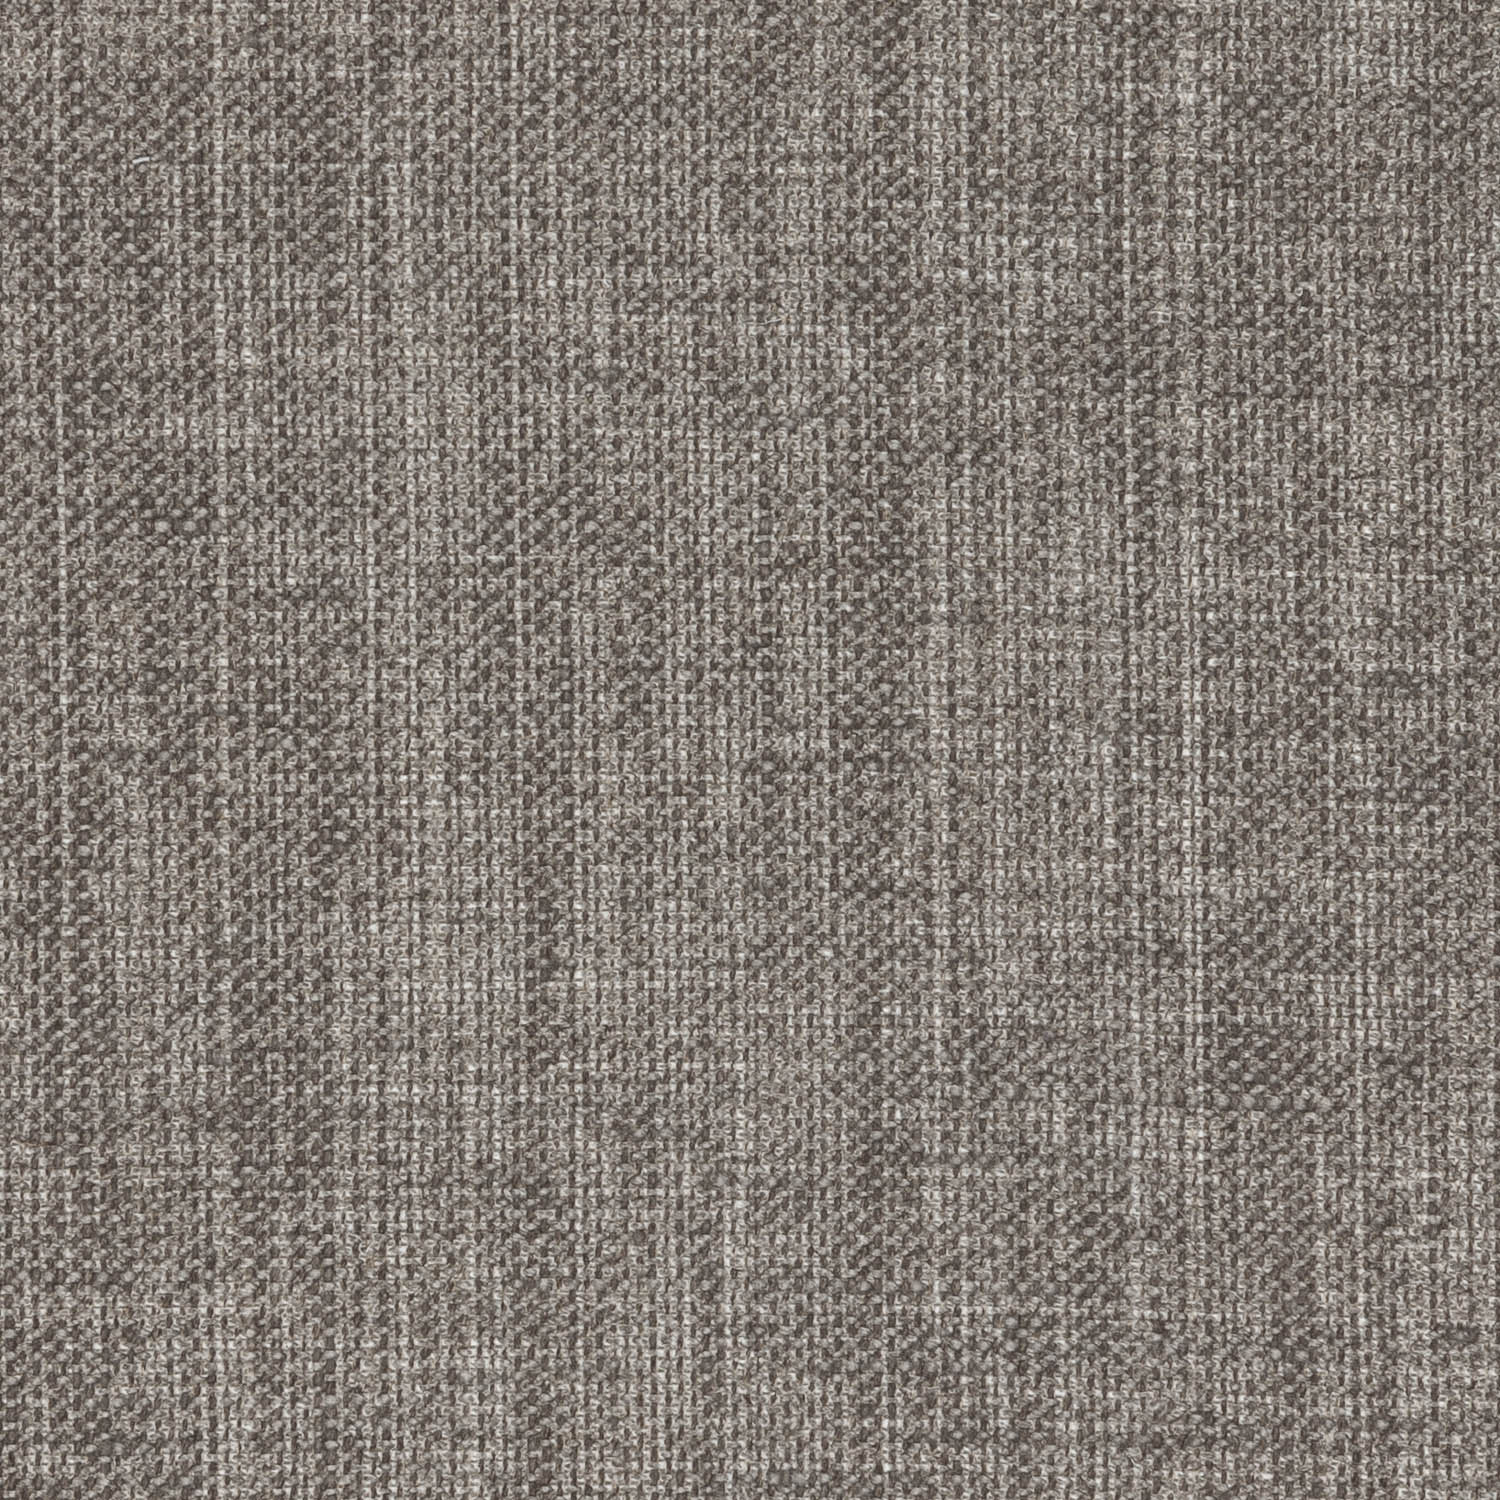 n-044-neutral-plain-linen-grey-matter-1.jpg